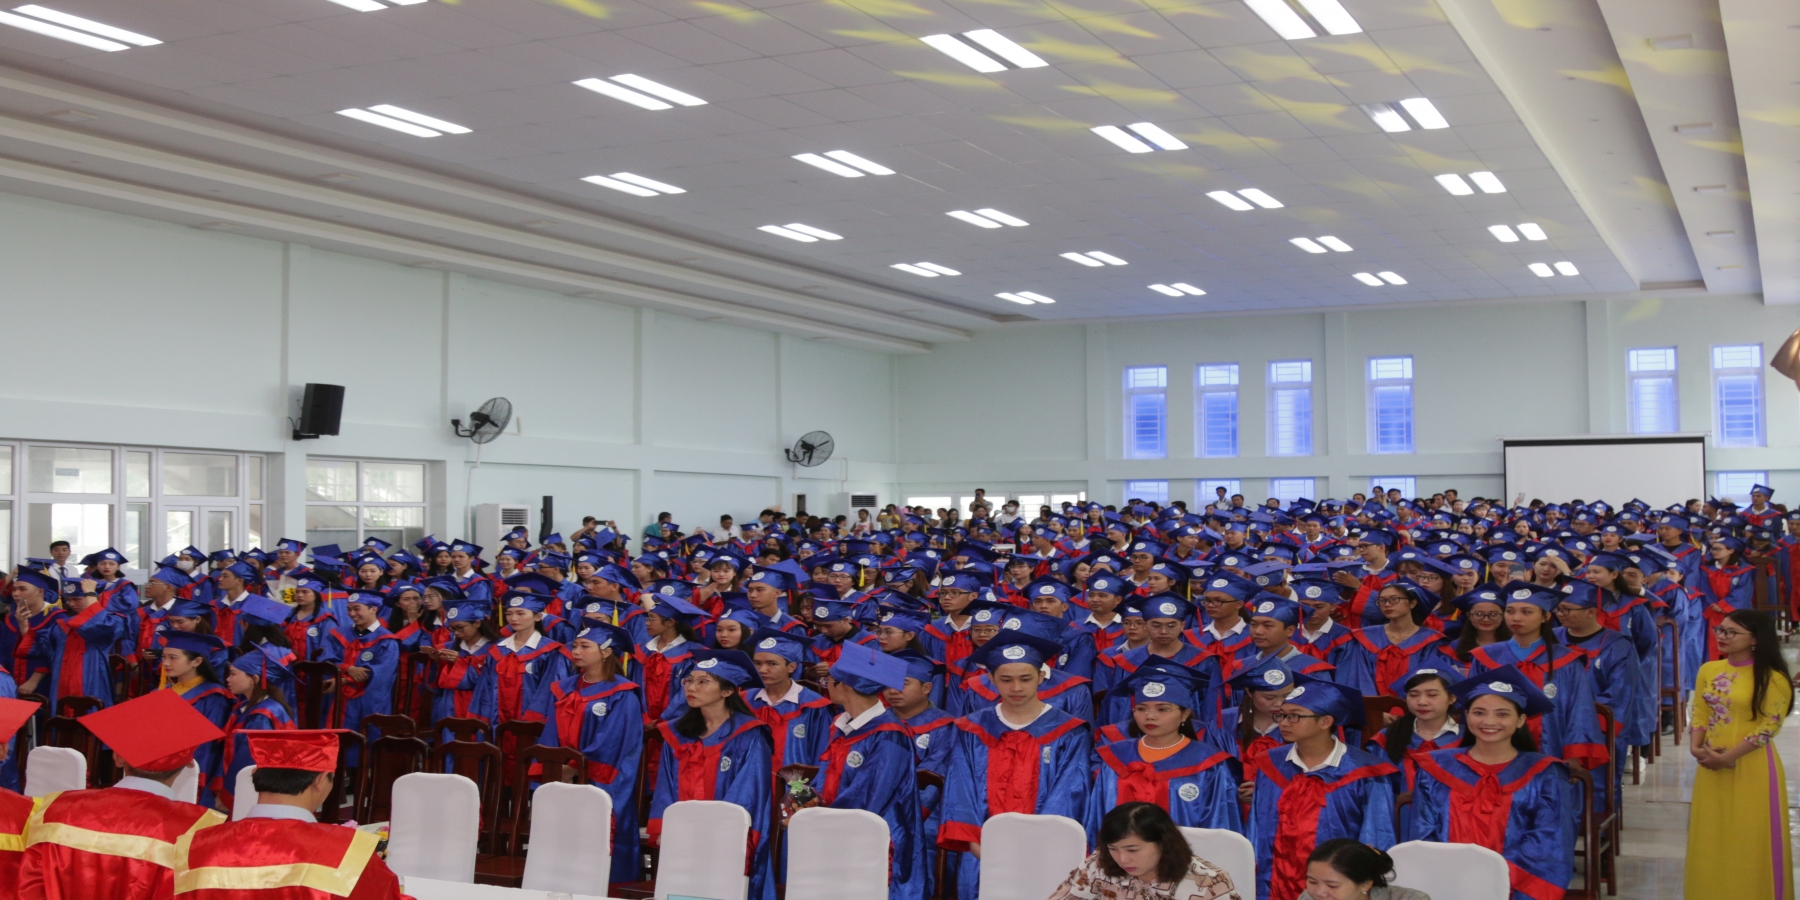 Vỡ òa nhiều cảm xúc trong ngày Lễ trao bằng tốt nghiệp đại học năm 2020 ở Trường Đại học Kiên Giang